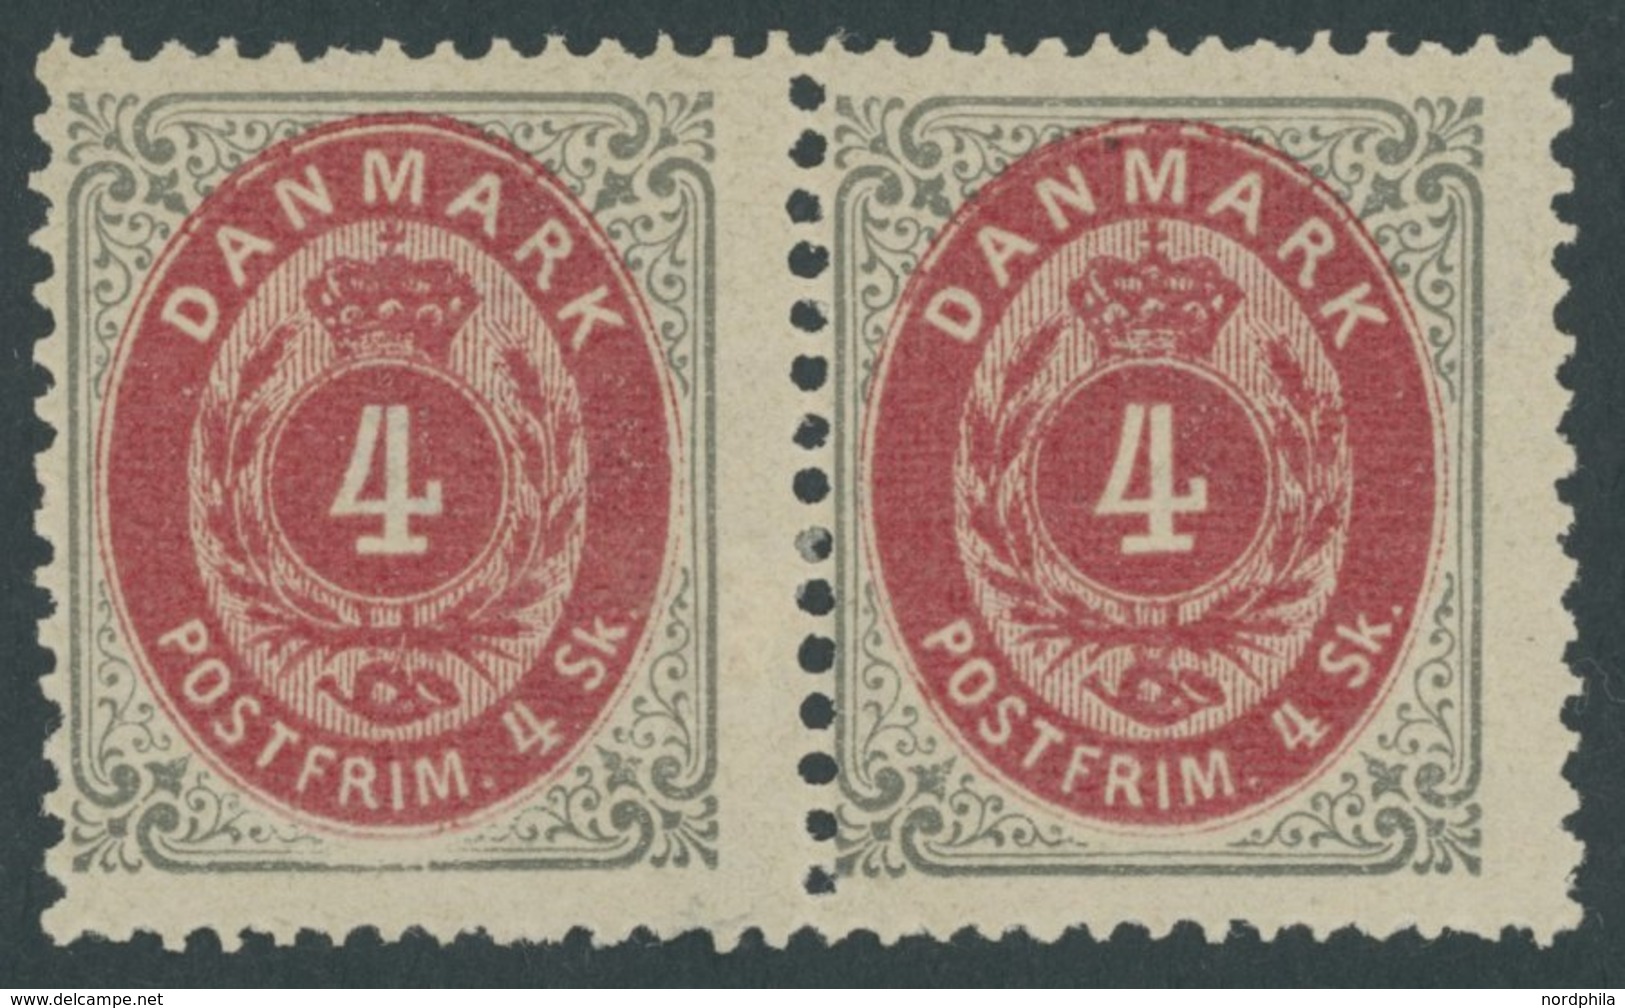 DÄNEMARK 18IA Paar *, 1870, 4 S. Grau/rot, Gezähnt K 14:131/2, Im Waagerechten Paar, Falzrest, Pracht - Gebraucht